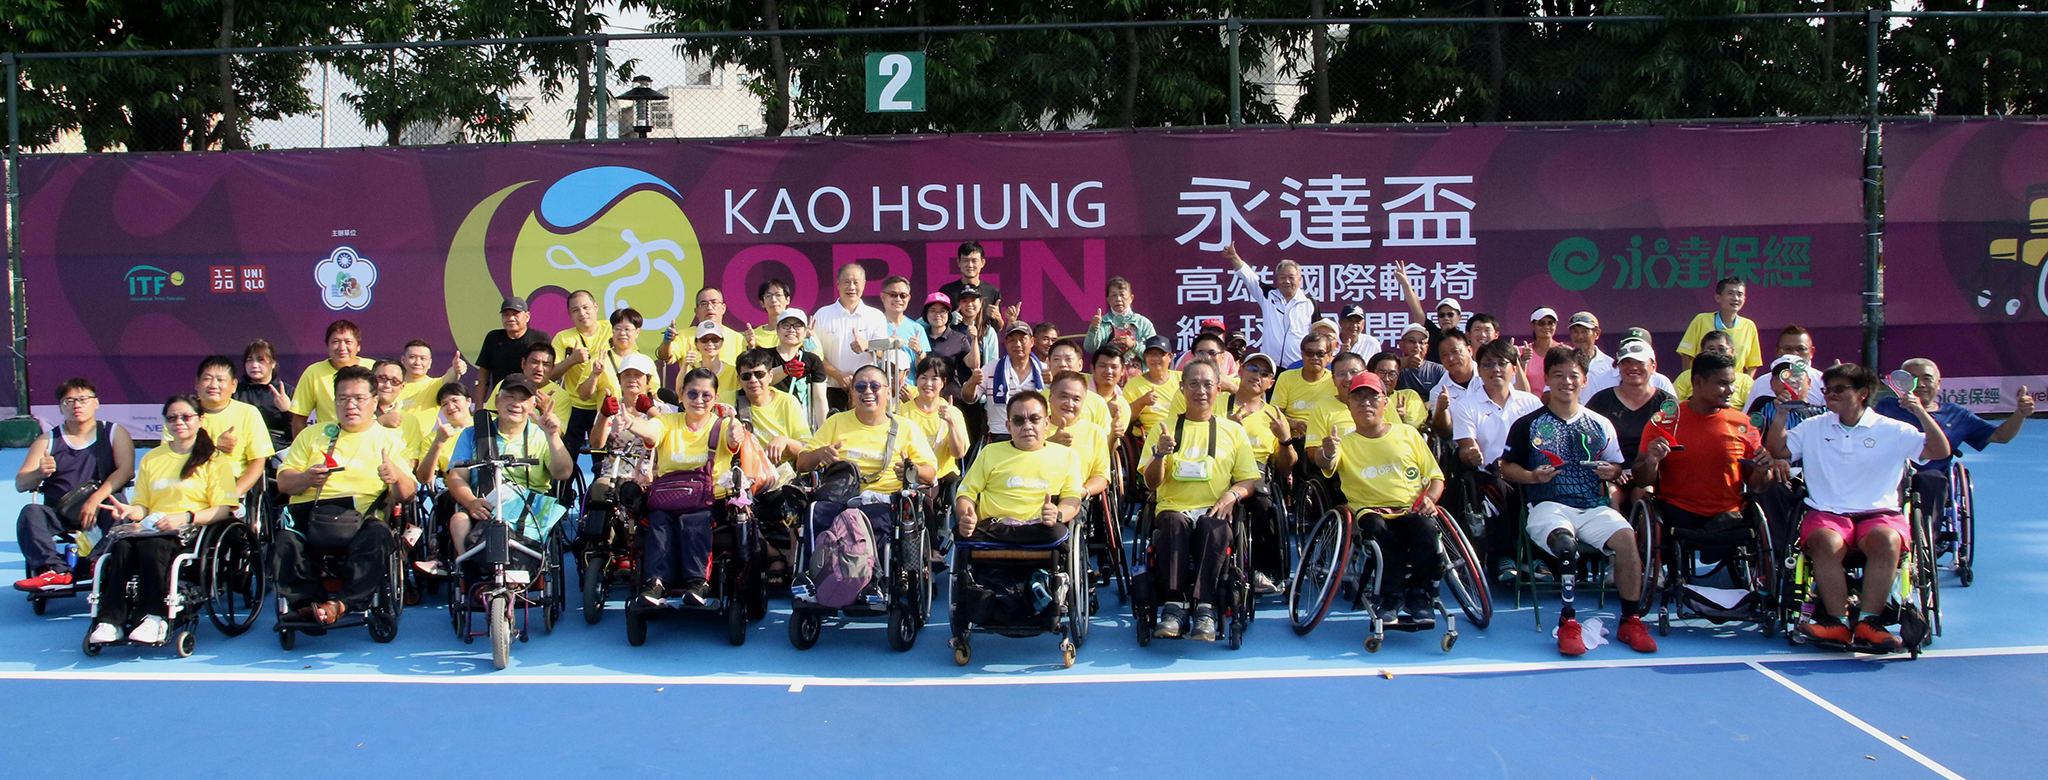 「永達盃高雄國際輪椅網球公開賽」於高雄輪椅夢公園圓滿閉幕，得獎選手一同合影。